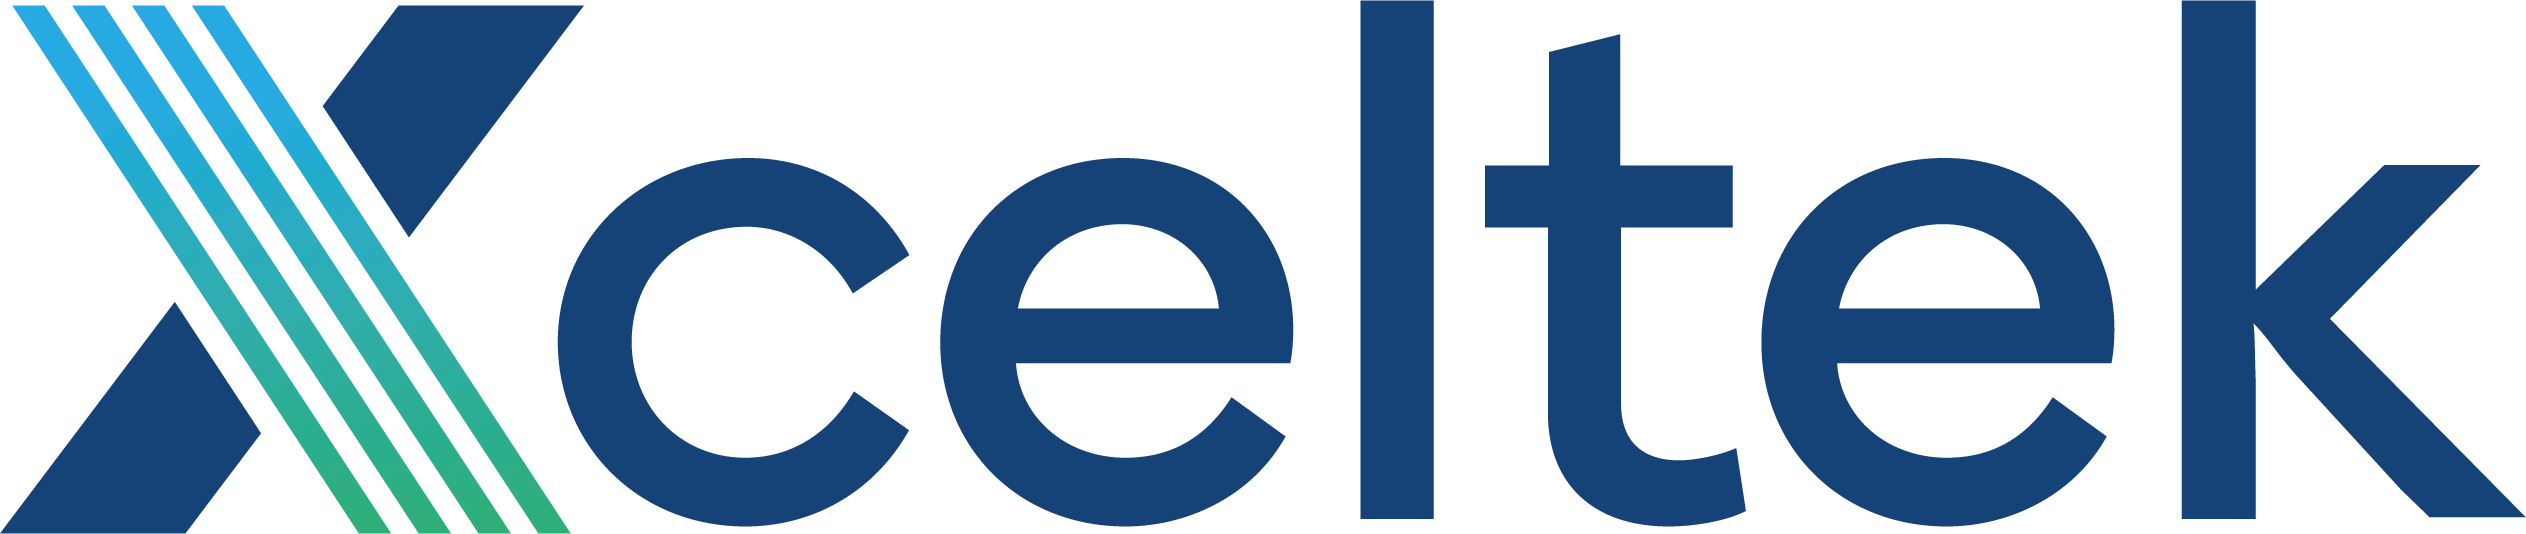 TECH-Final Logo